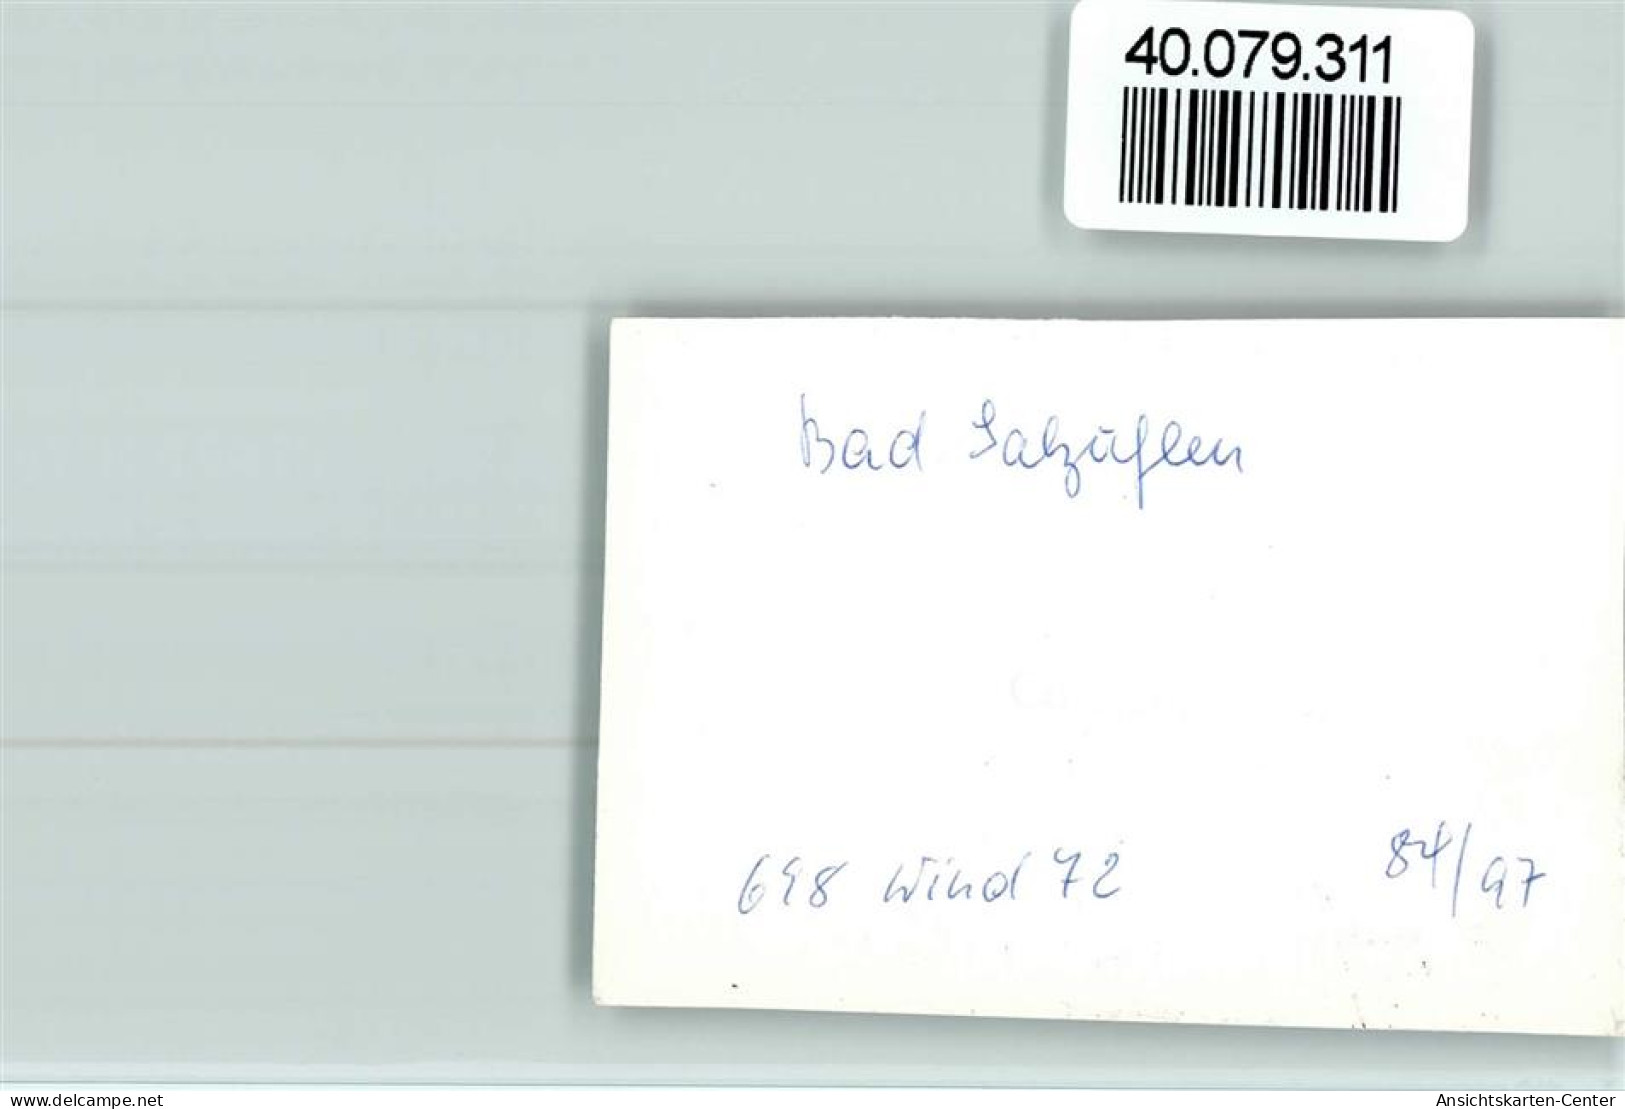 40079311 - Bad Salzuflen - Bad Salzuflen